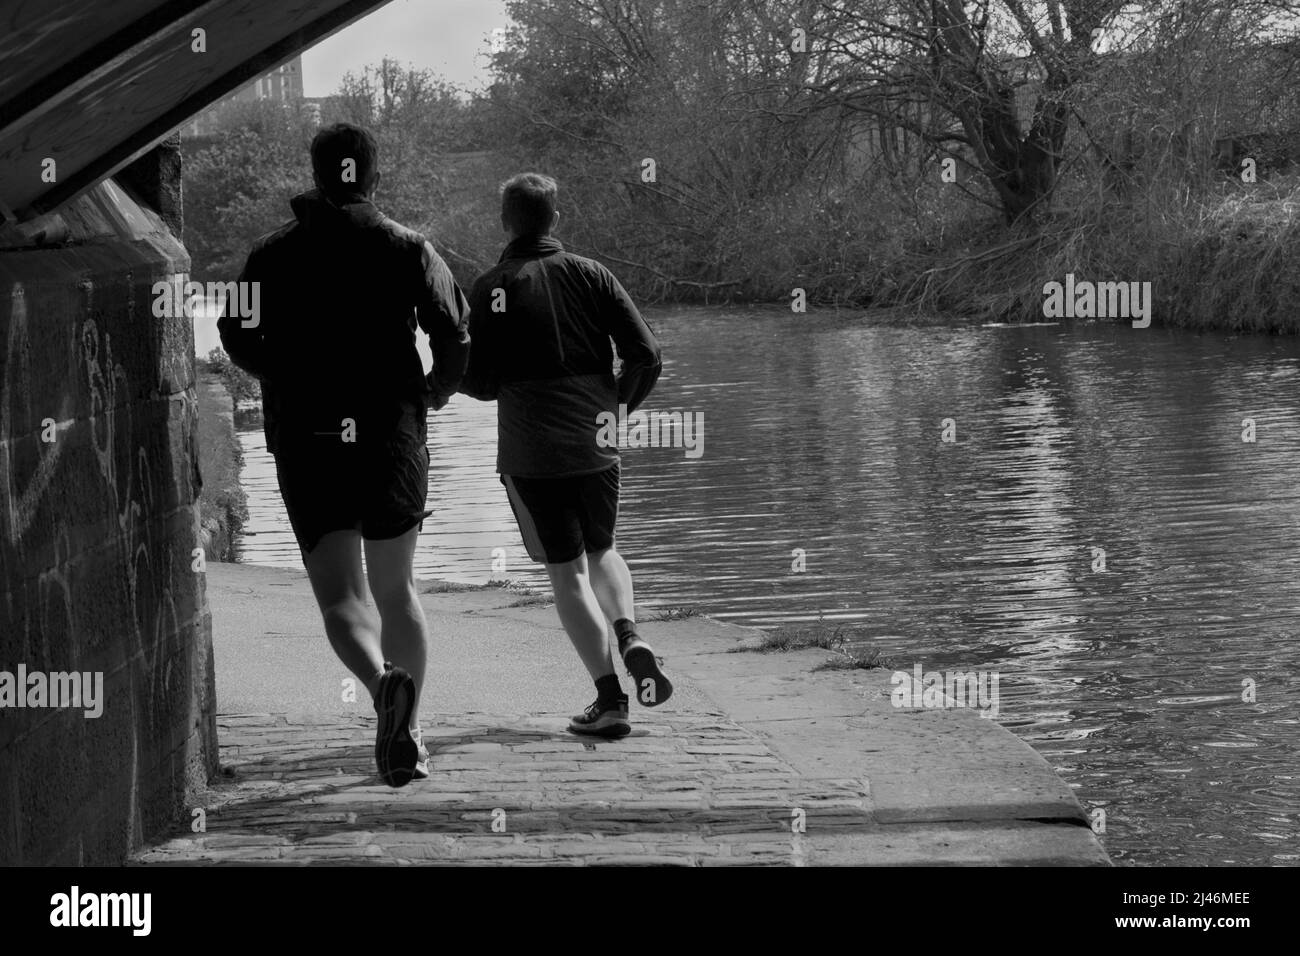 Photo de deux gars pour un jogging le long du chemin de halage qui longe le canal de Leeds et Liverpool à Leeds, West Yorkshire, Angleterre, Royaume-Uni. Banque D'Images